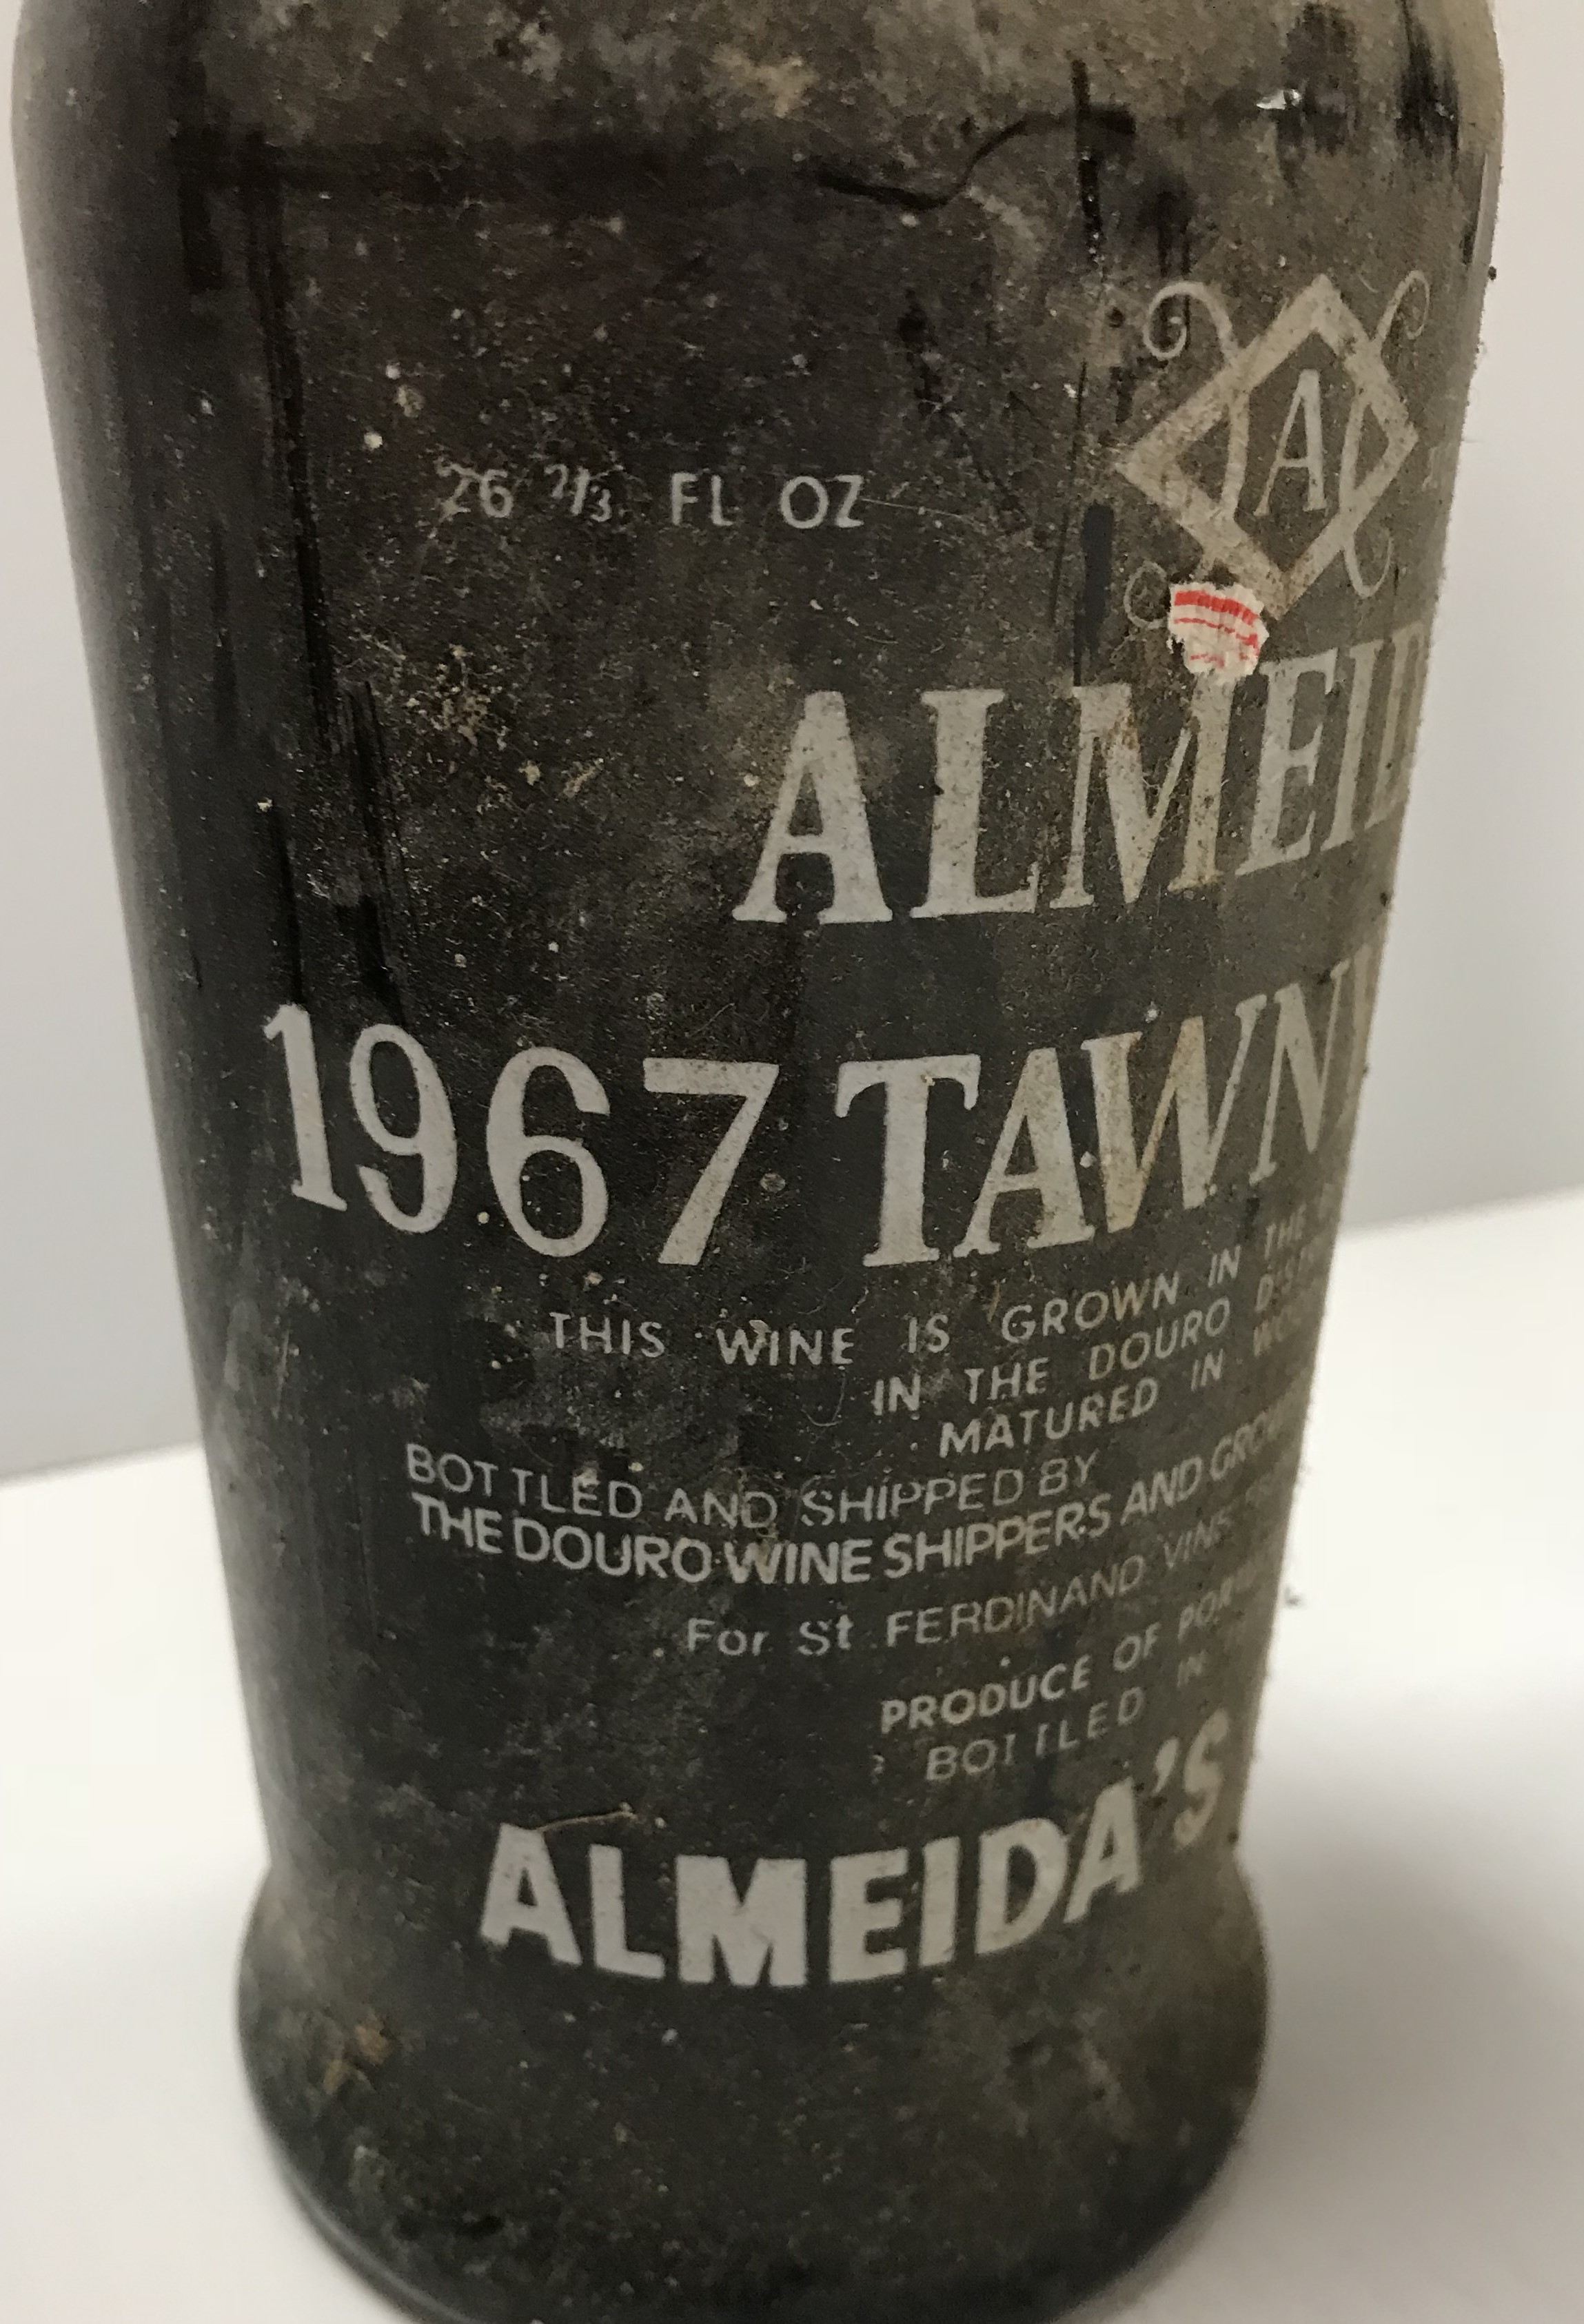 One bottle Almeida tawny port 1967 and two bottles Niepoort late bottled vintage port 1999, - Image 2 of 4